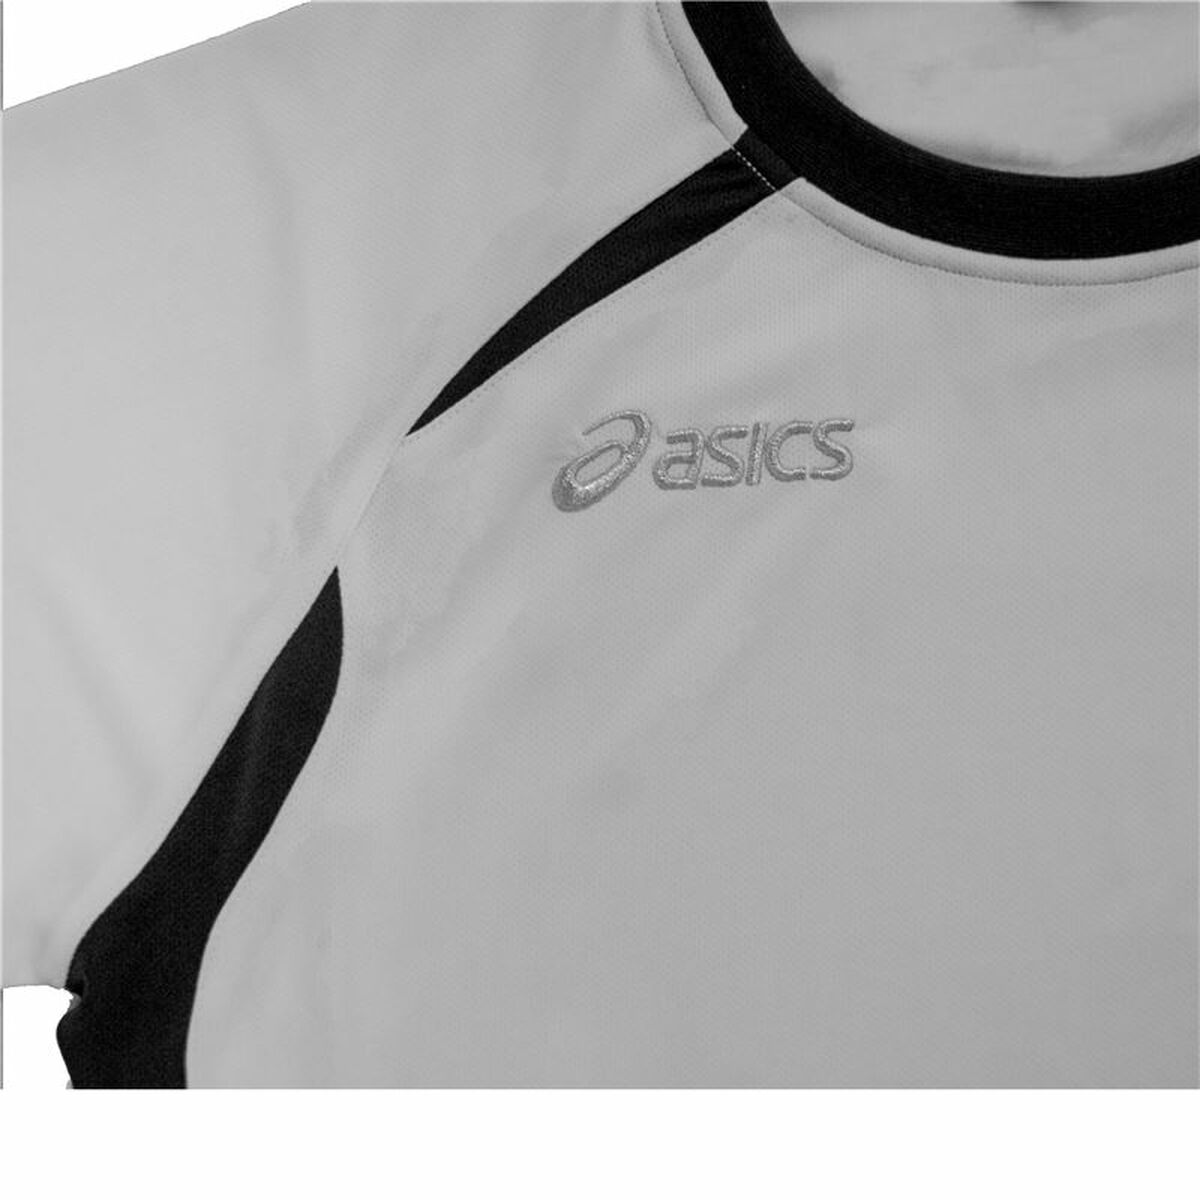 Herren Kurzarm-T-Shirt Asics Tennis Weiß